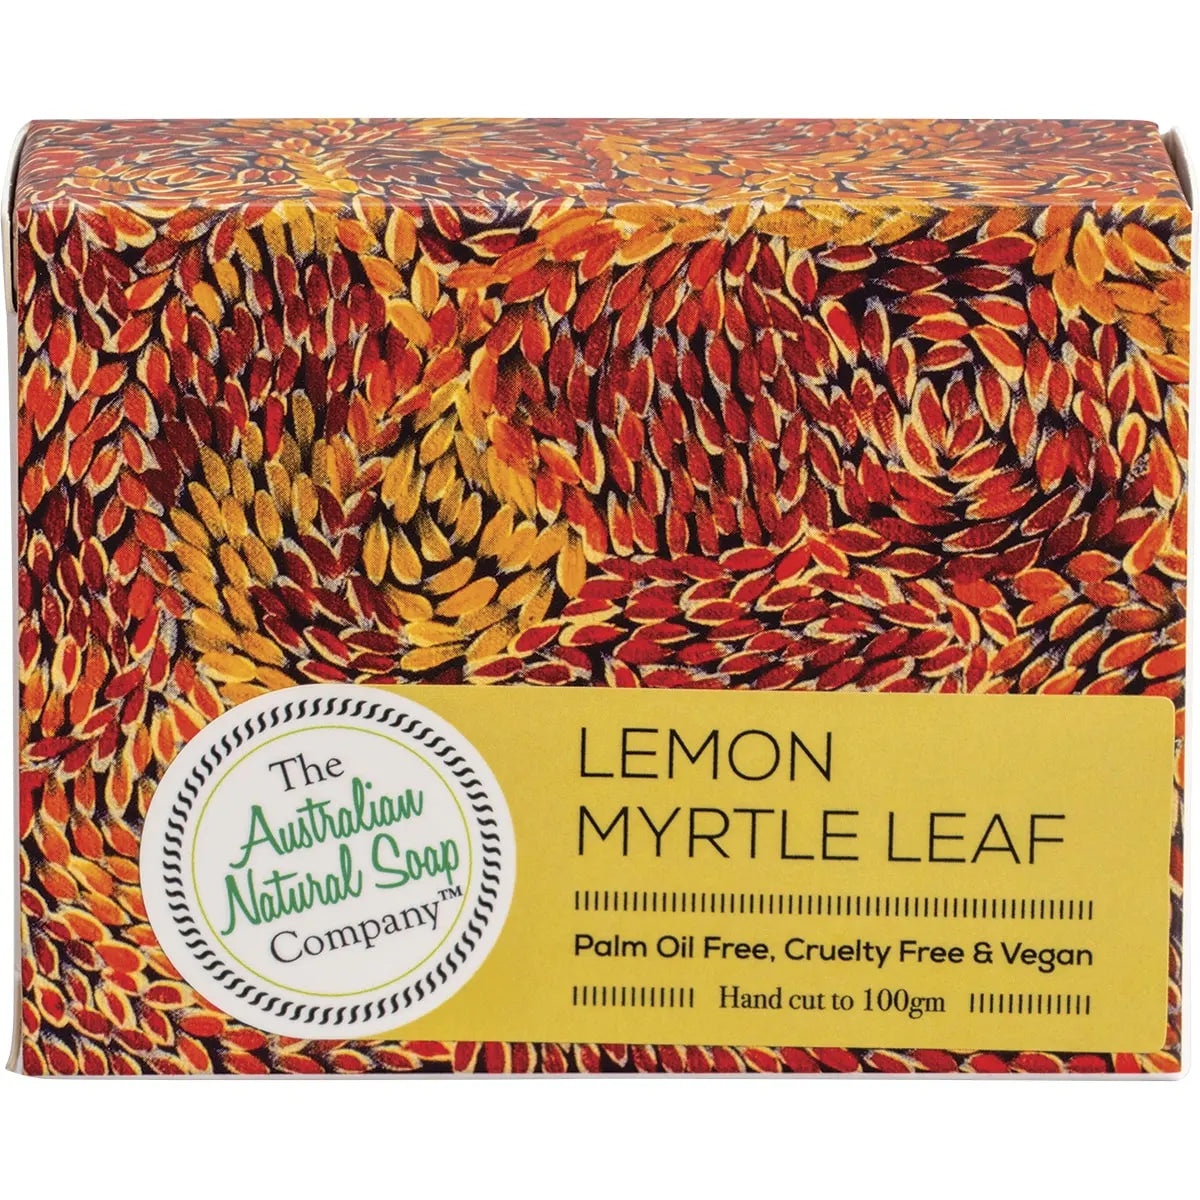 The Australian Natural Co Australian Bush Soap Lemon Myrtle Leaf 100g